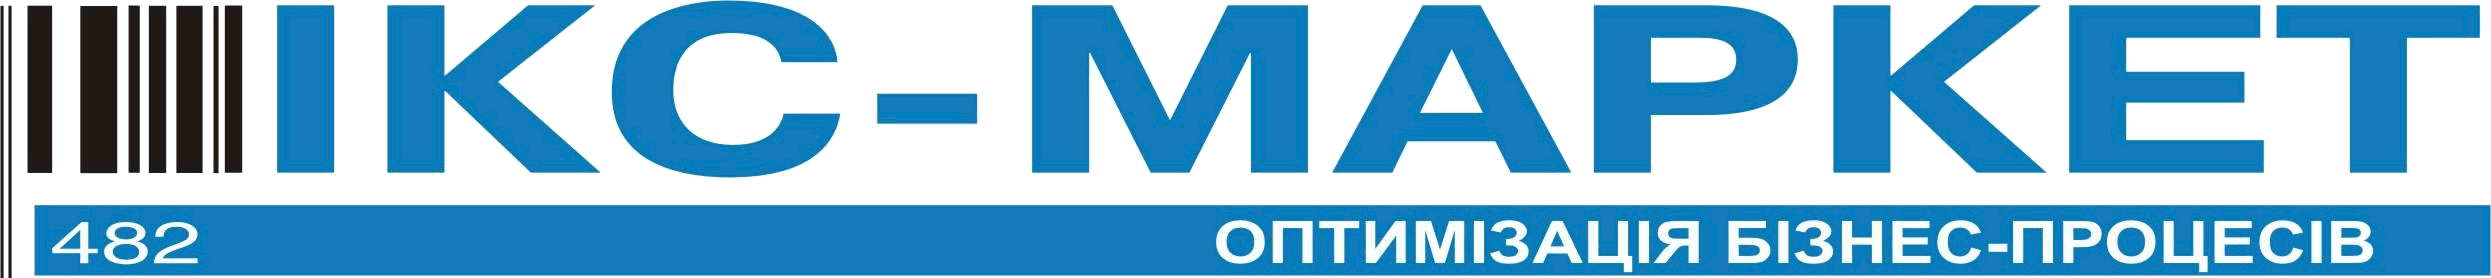 Компания ИКС-Маркет,Киев-производитель IKC-М510.